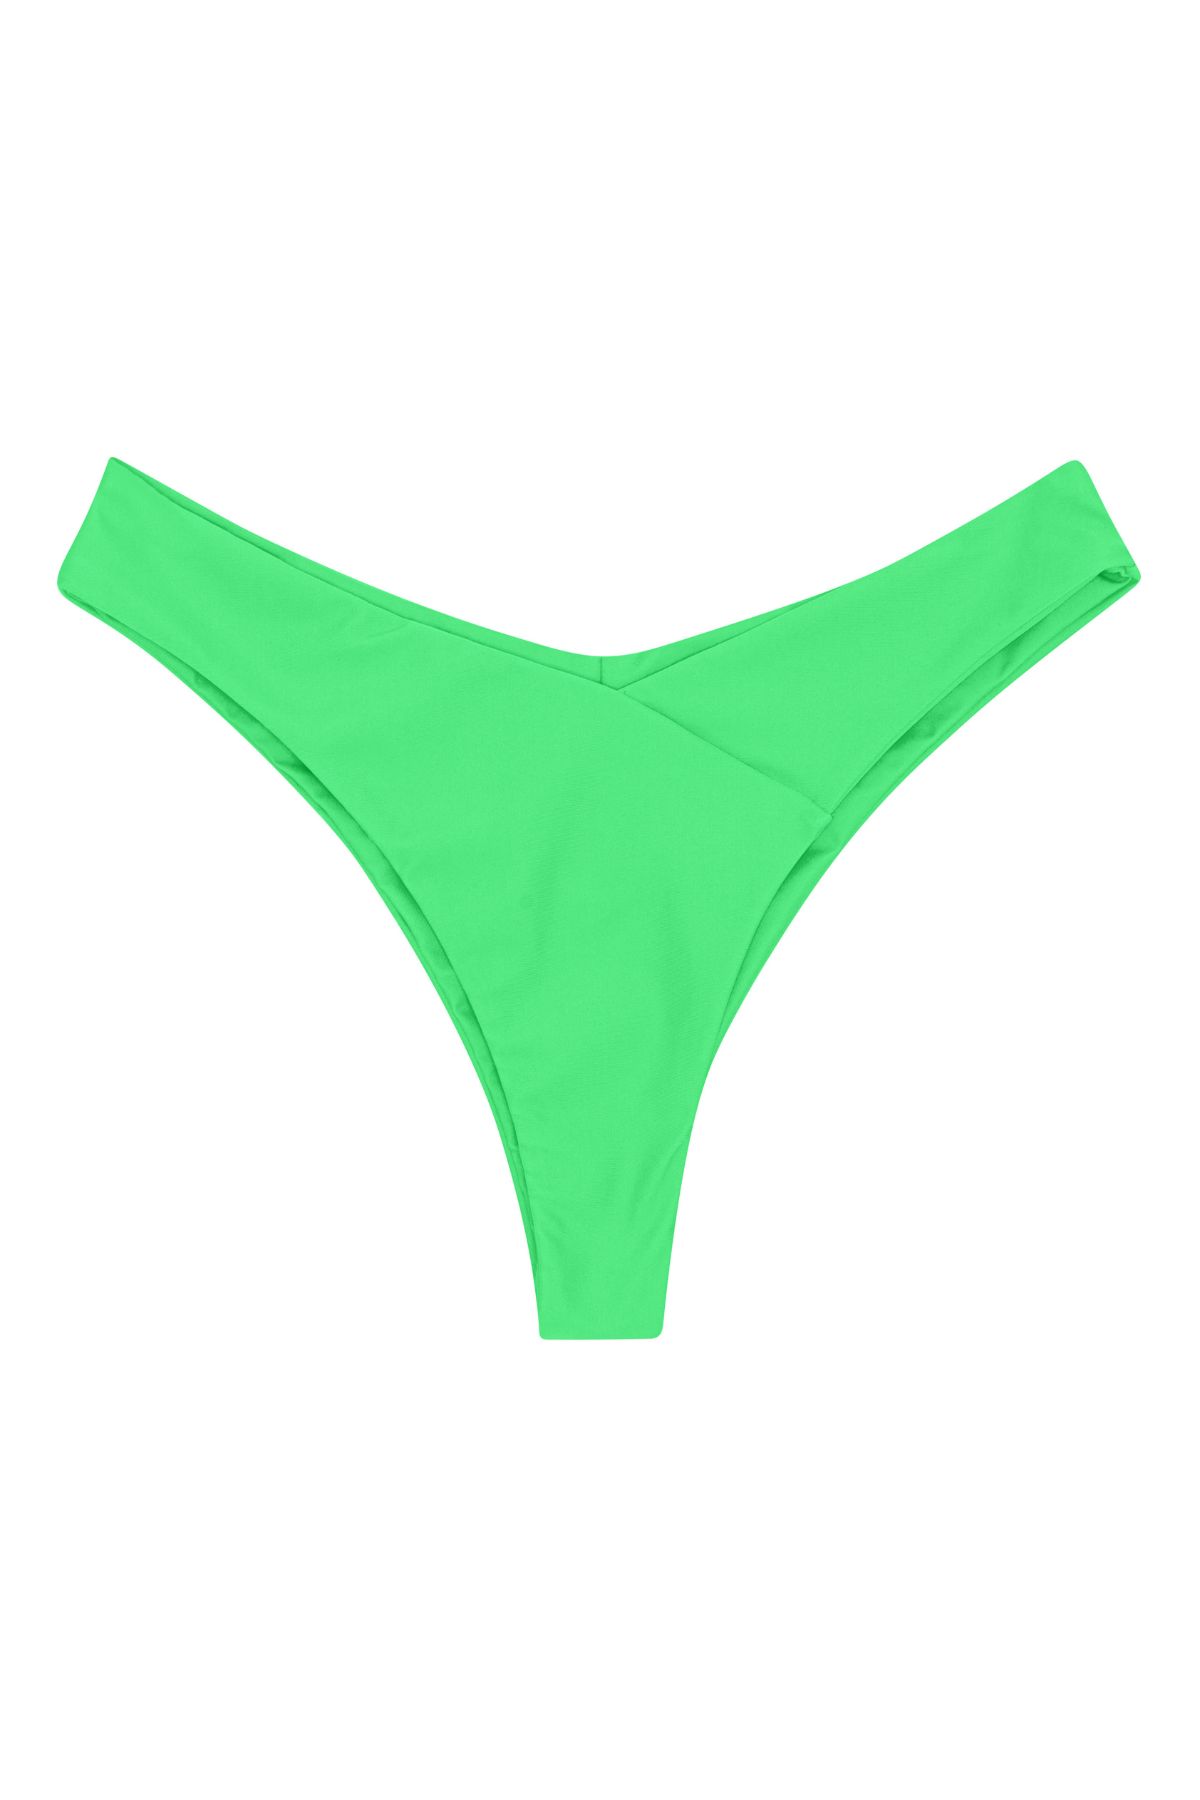 Canggu V-shaped bikini bottom - Earth